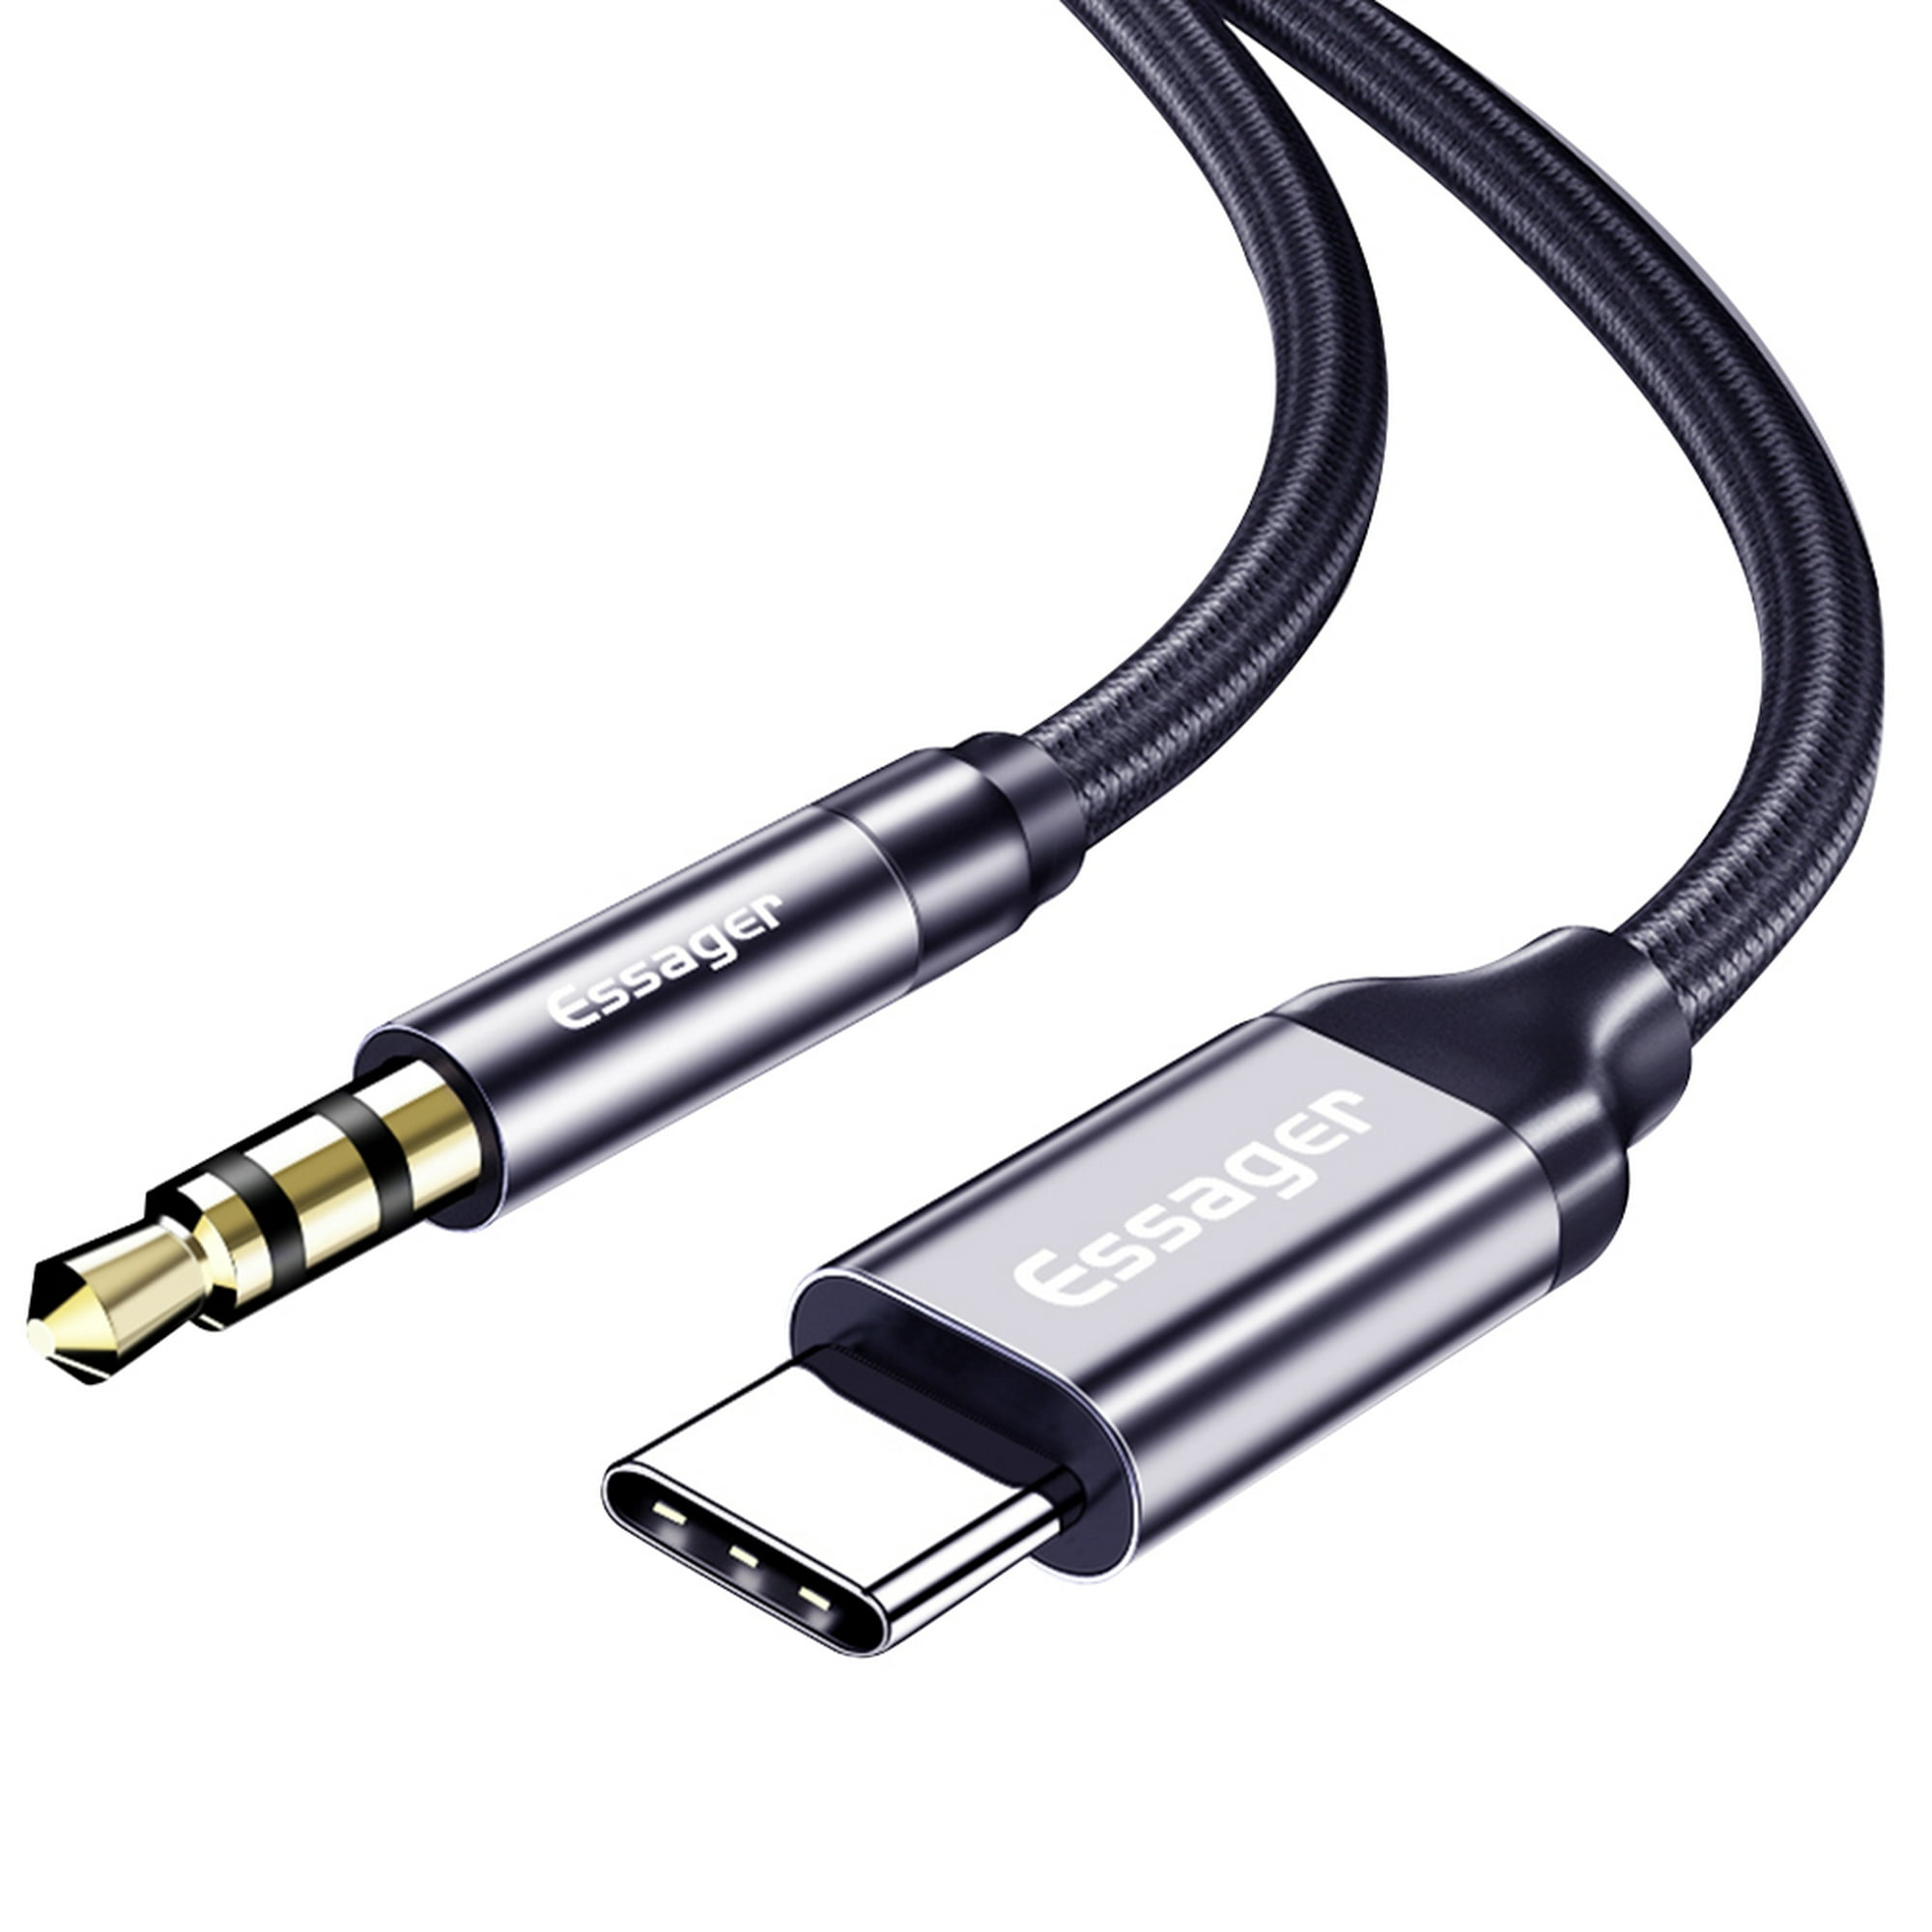 Cable Auxiliar Tipo C a Audio Estéreo 3.5mm para Audífono Coche Celulares  Auriculares. - ELE-GATE